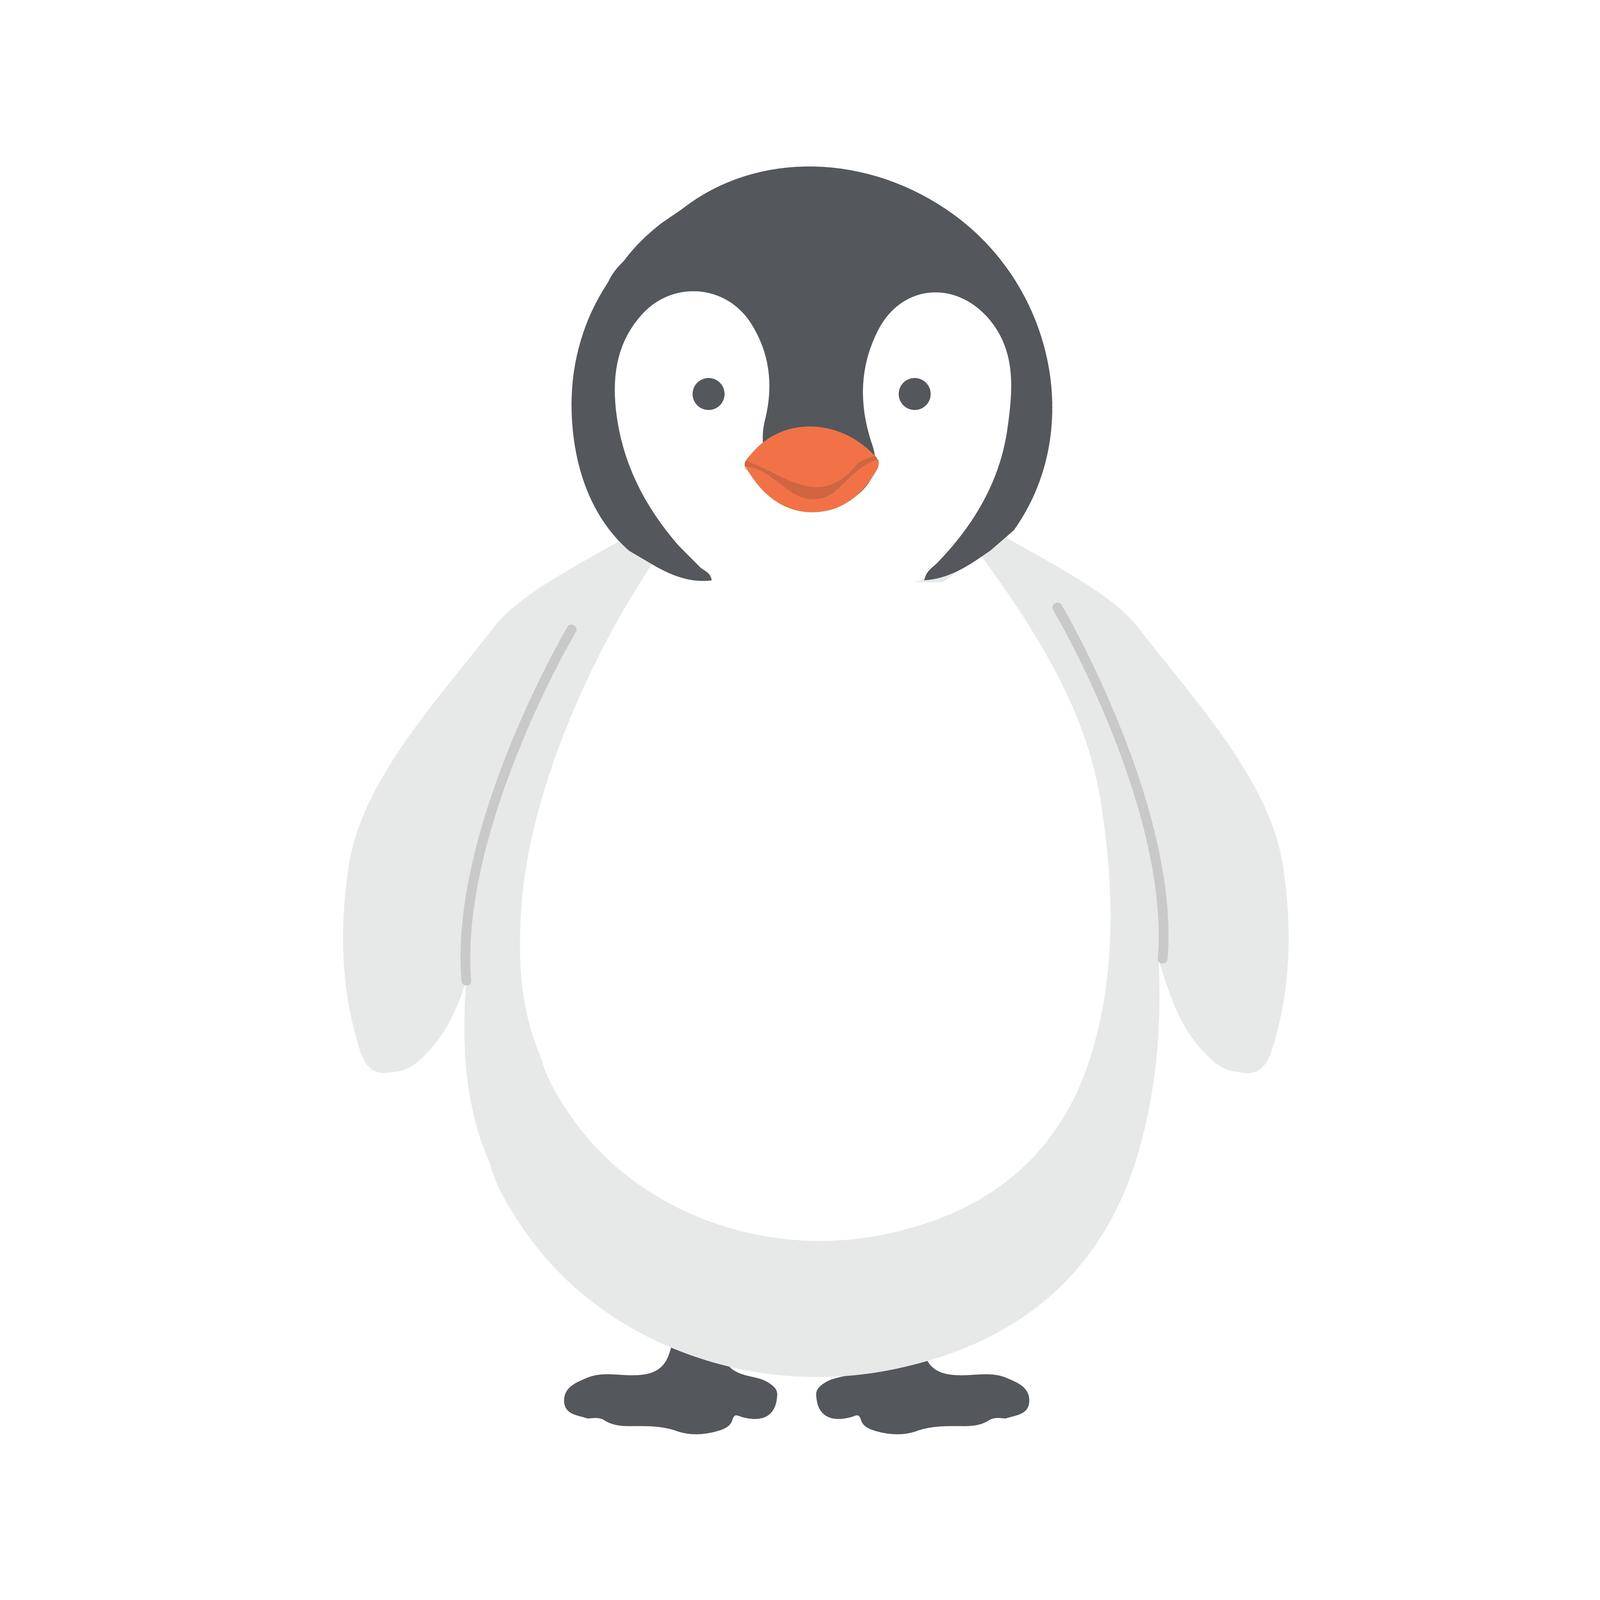 Cute baby emperor penguin cartoon vector by focus_bell